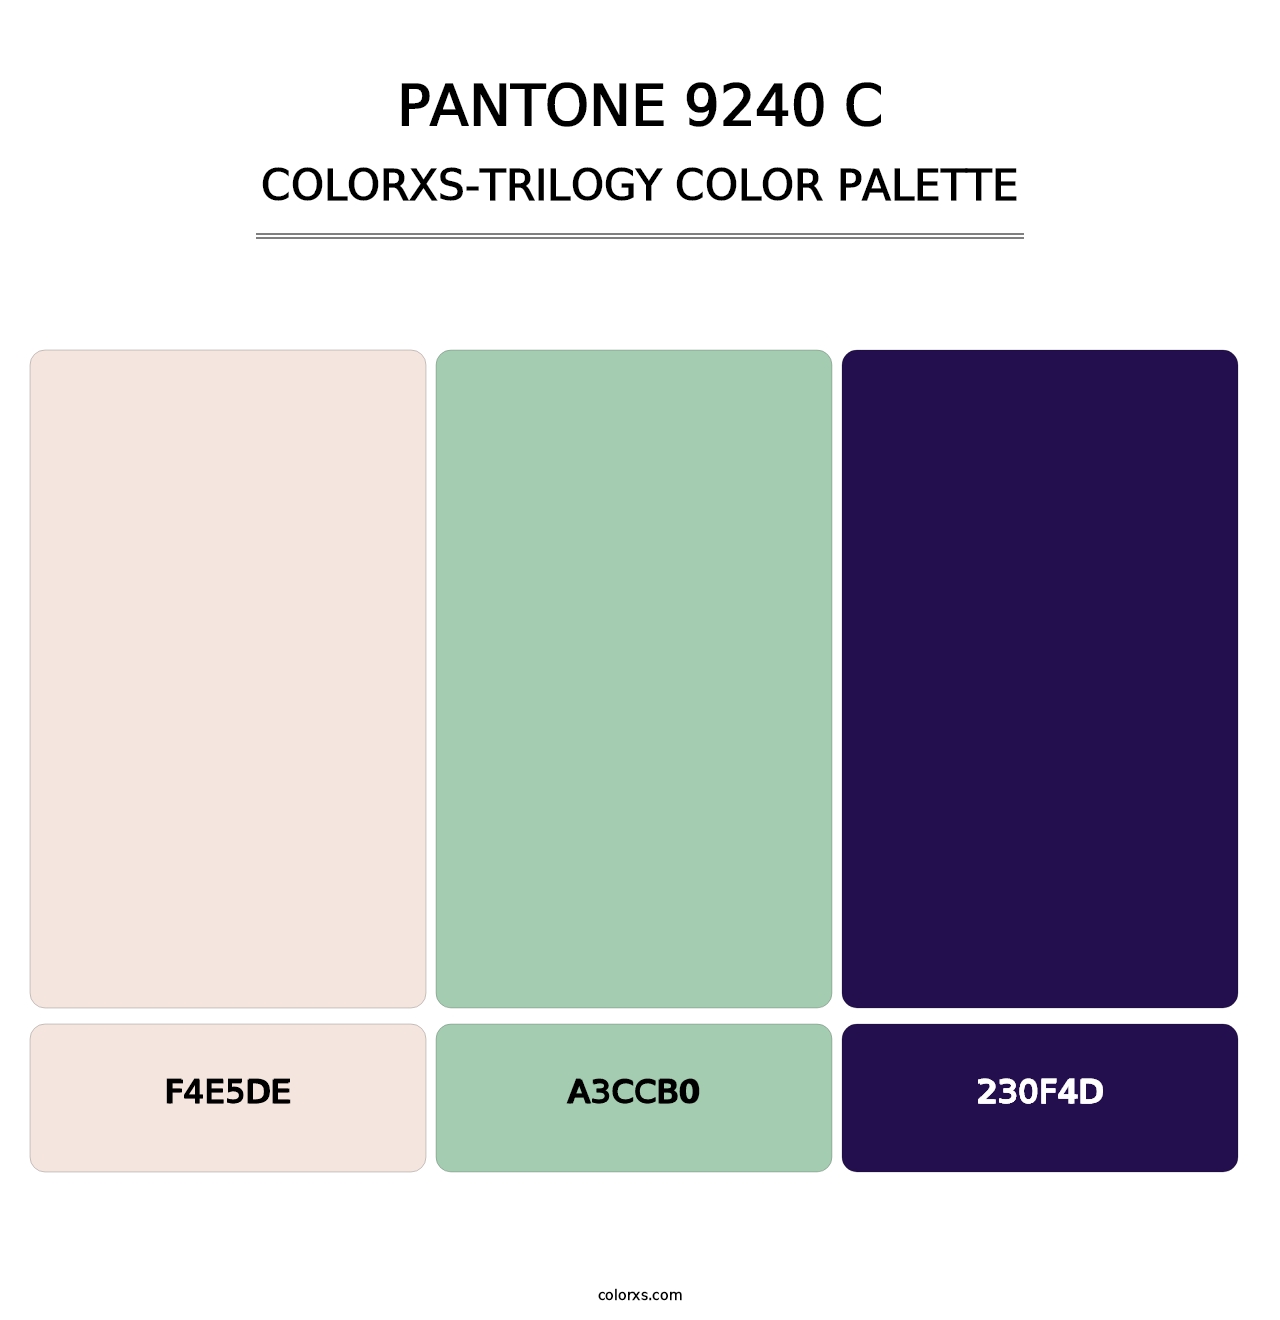 PANTONE 9240 C - Colorxs Trilogy Palette